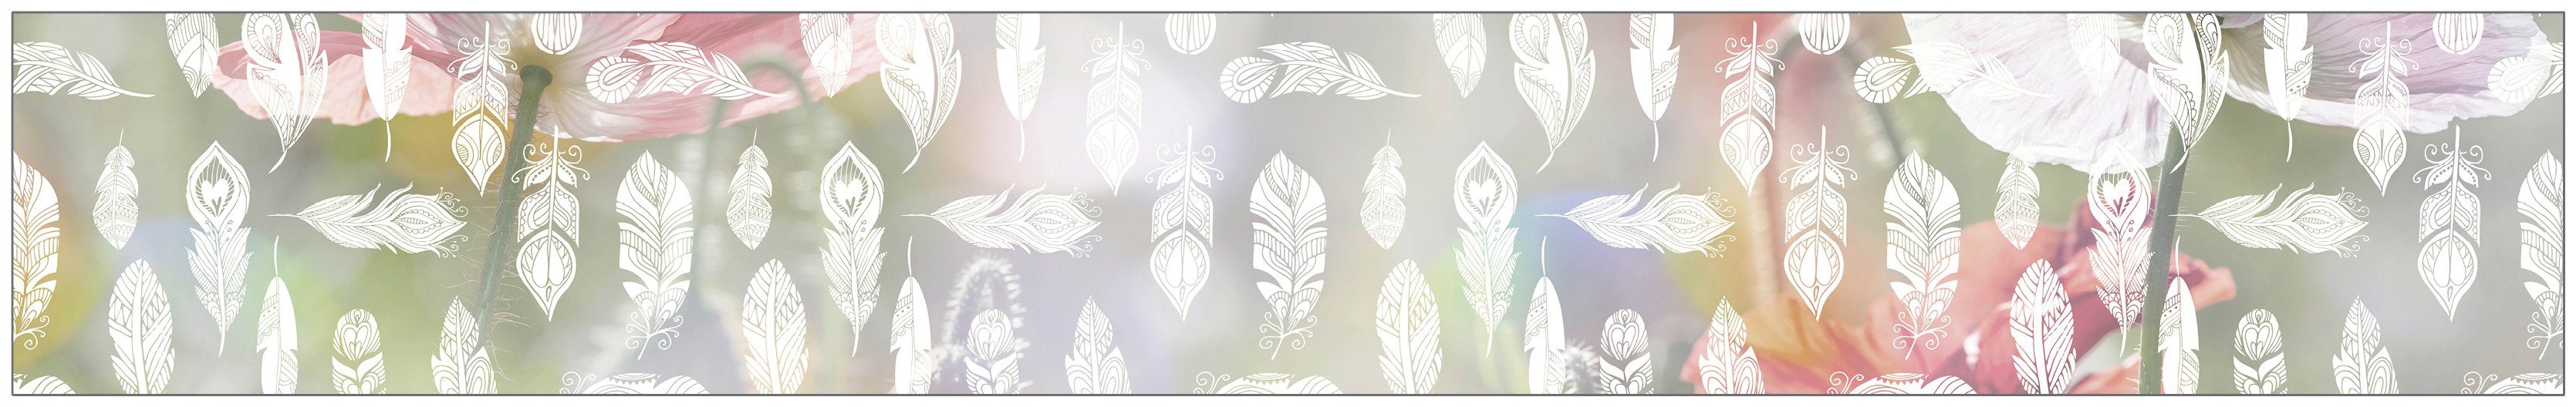 Fensterfolie Look Feathers white, MySpotti, halbtransparent, glatt, 200 x 30 cm, statisch haftend | Fensterfolien